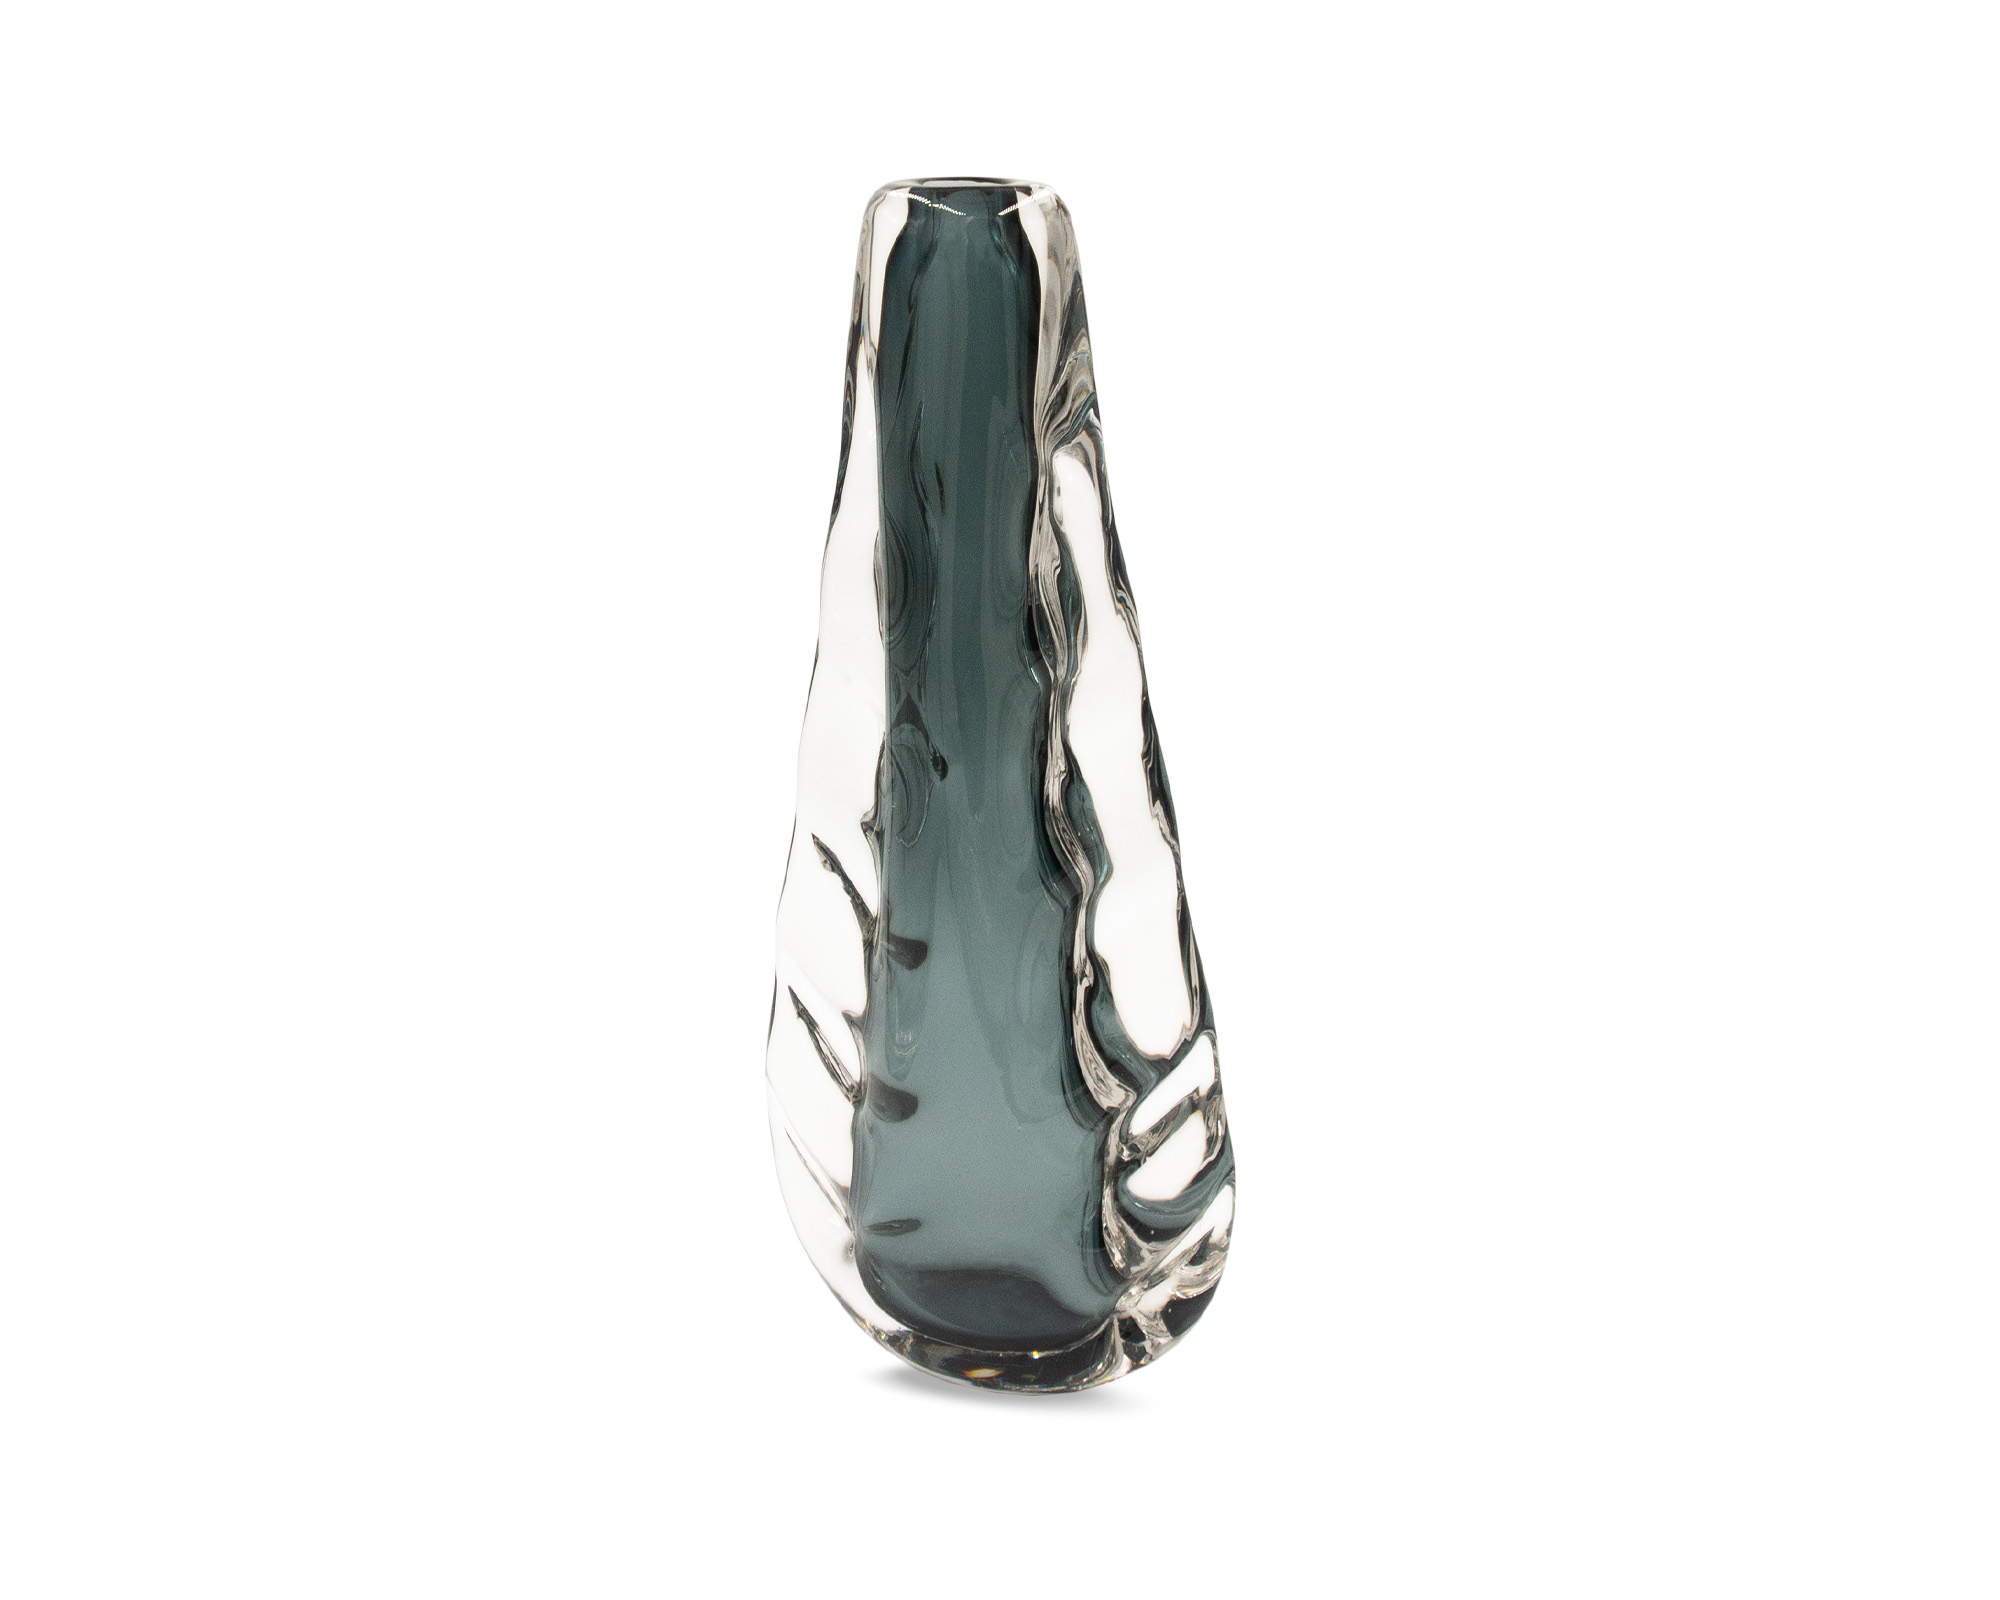 LE019-VS-054_L&E_Astell Crystal Blue Vase_Large_2000 x 1600_2